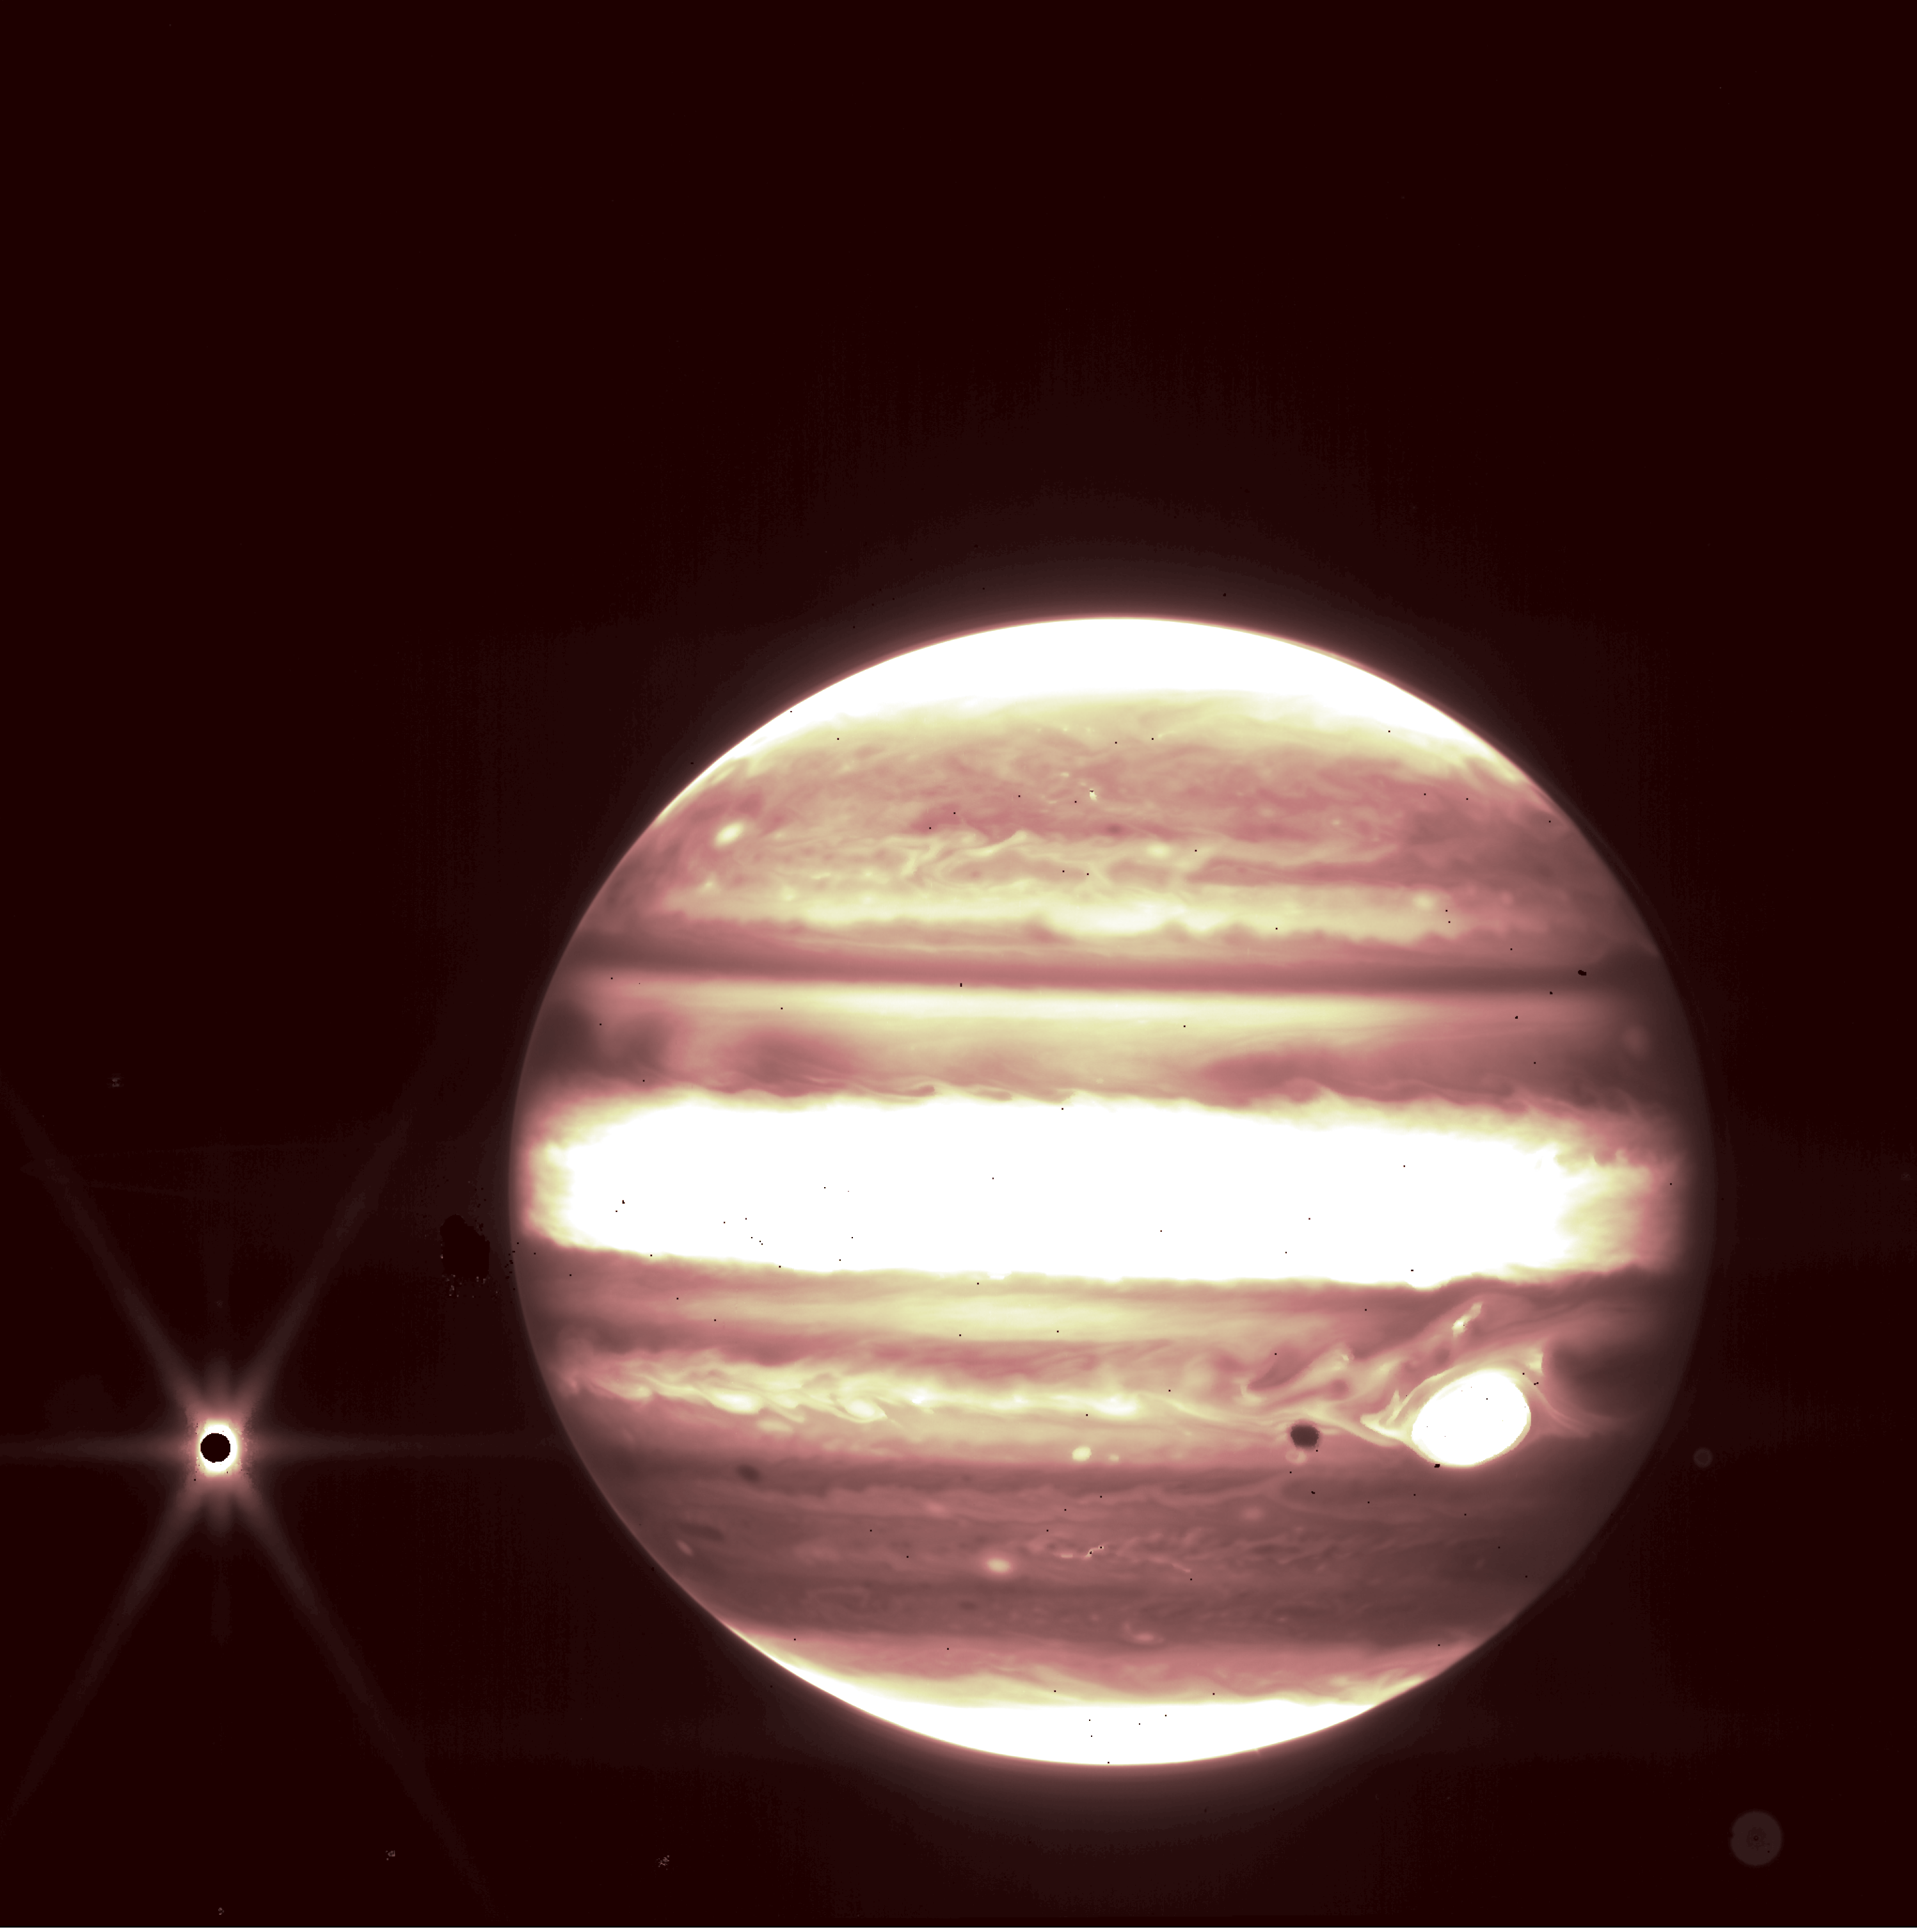 Jupiter visto en un imagen infrarroja adquirida por el Telescopio Espacial James Webb Space Telescope. La luna de Júpiter, Europa, se puede ver a la izquierda